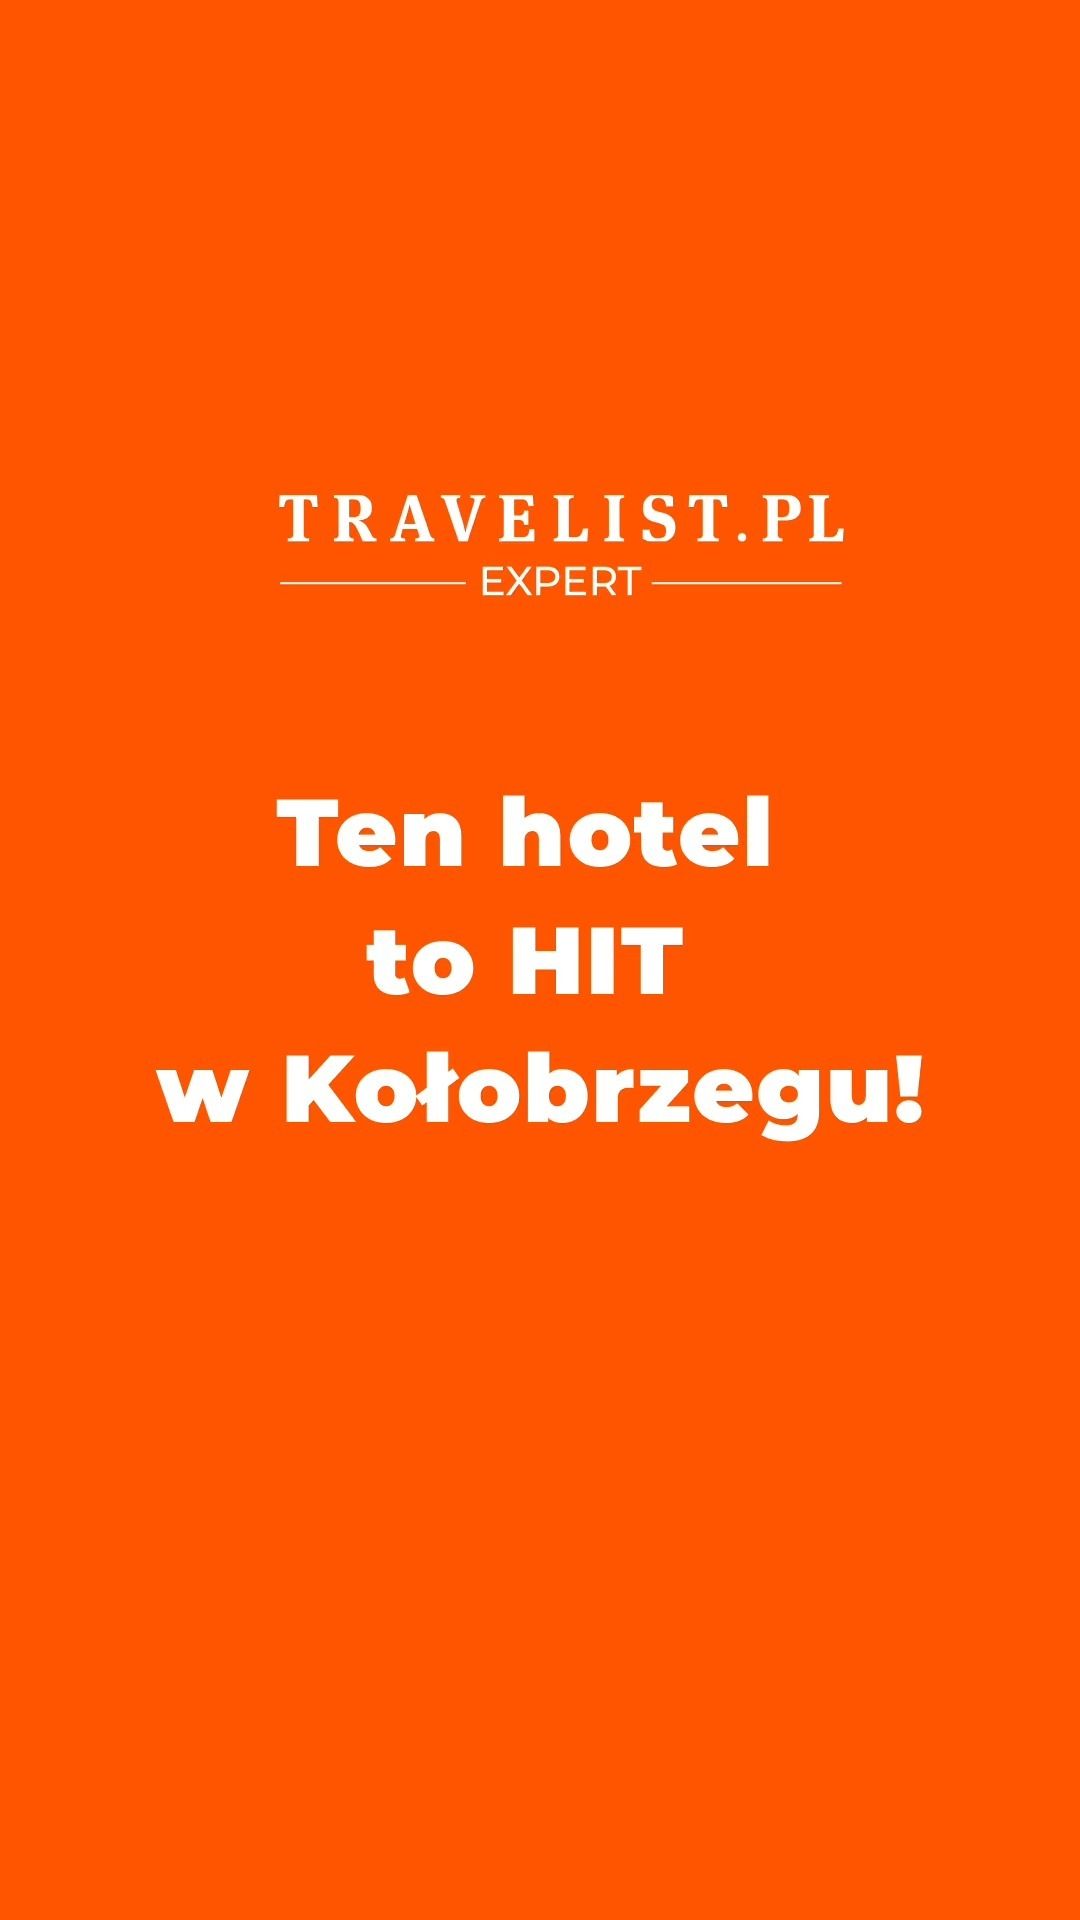 Nasz Ekspert Grzesiek — Account Manager — ma Twój pomysł na wypoczynek w SUPER CENIE, którą sam dla Ciebie wynegocjował. Ale tylko na chwilę, więc spiesz się!  Link w BIO @Travelist.pl. Przejdź na profil i kliknij w klikalny link. Następnie kliknij miniaturę tej rolki i zostaniesz przekierowan_ na stronę oferty tego hotelu 😊
#TravelistEkspert #MagazynTravelist #GwarancjaNajlepszejCenyzTravelist #hotele #zniżki